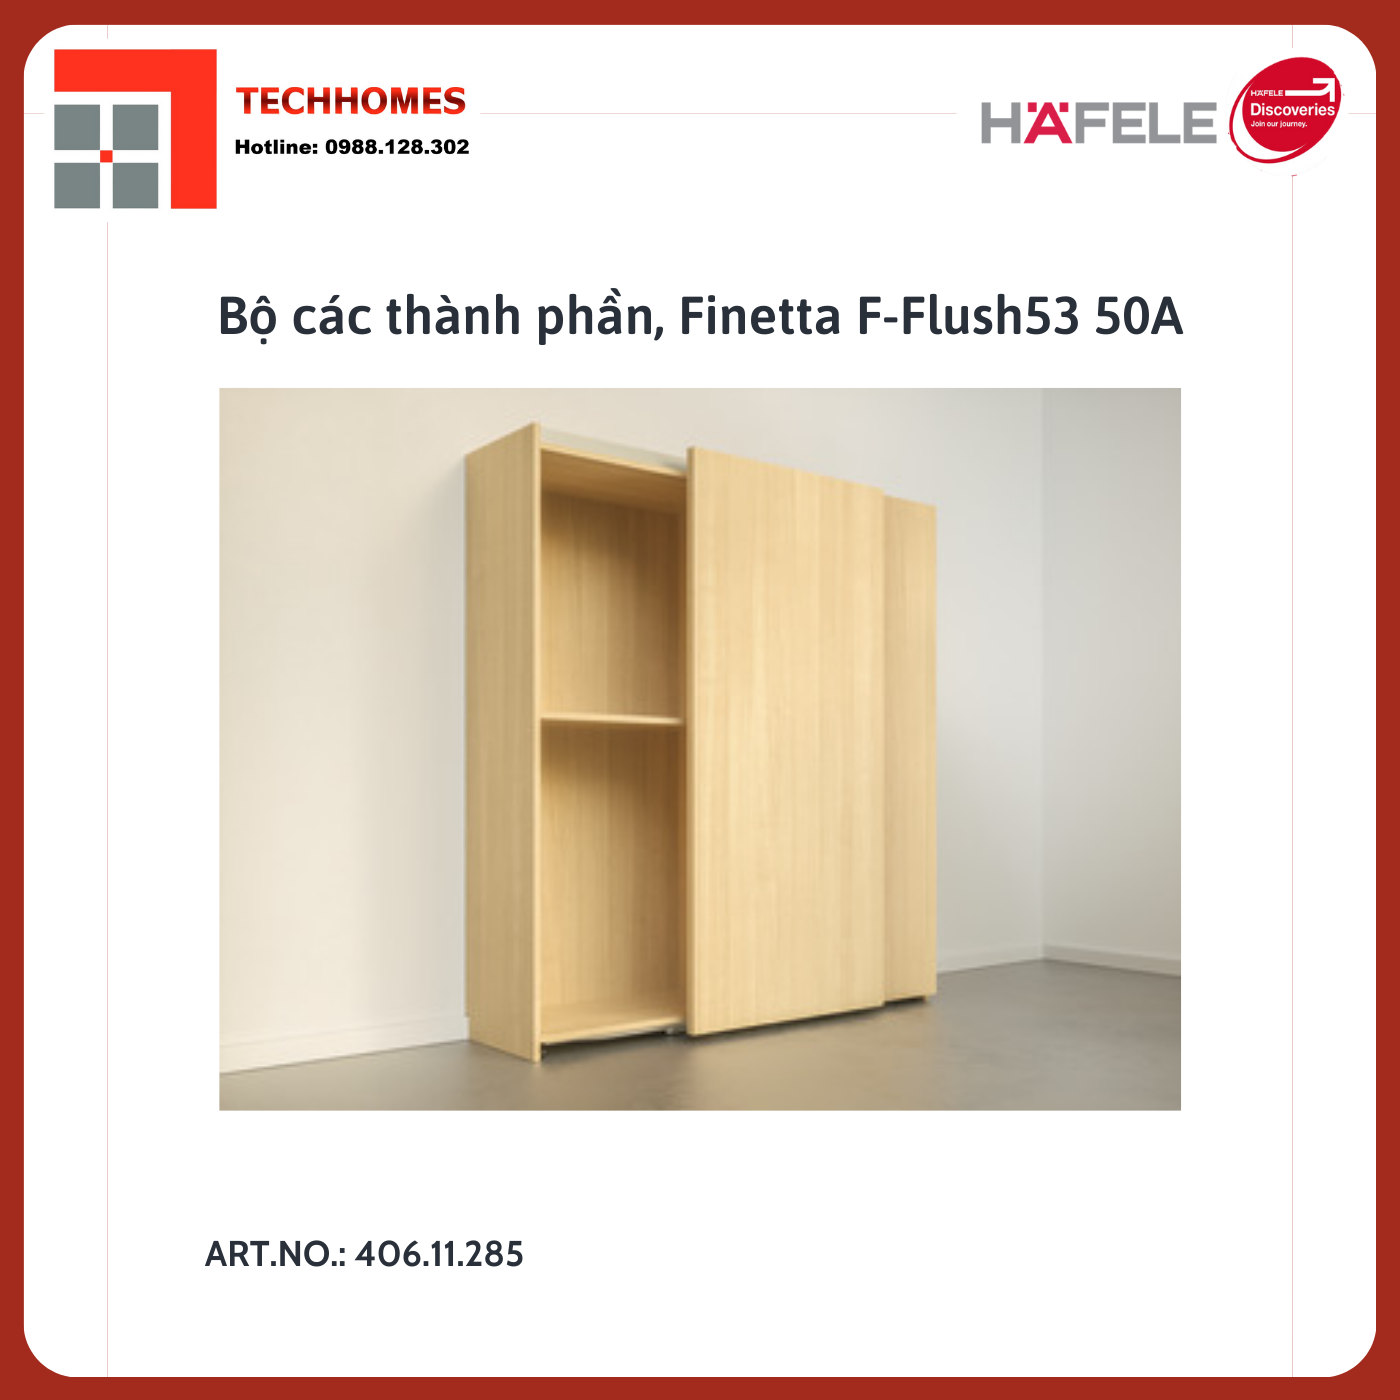 Bộ các thành phần, Finetta F-Flush53 50A chính hãng - 406.11.285